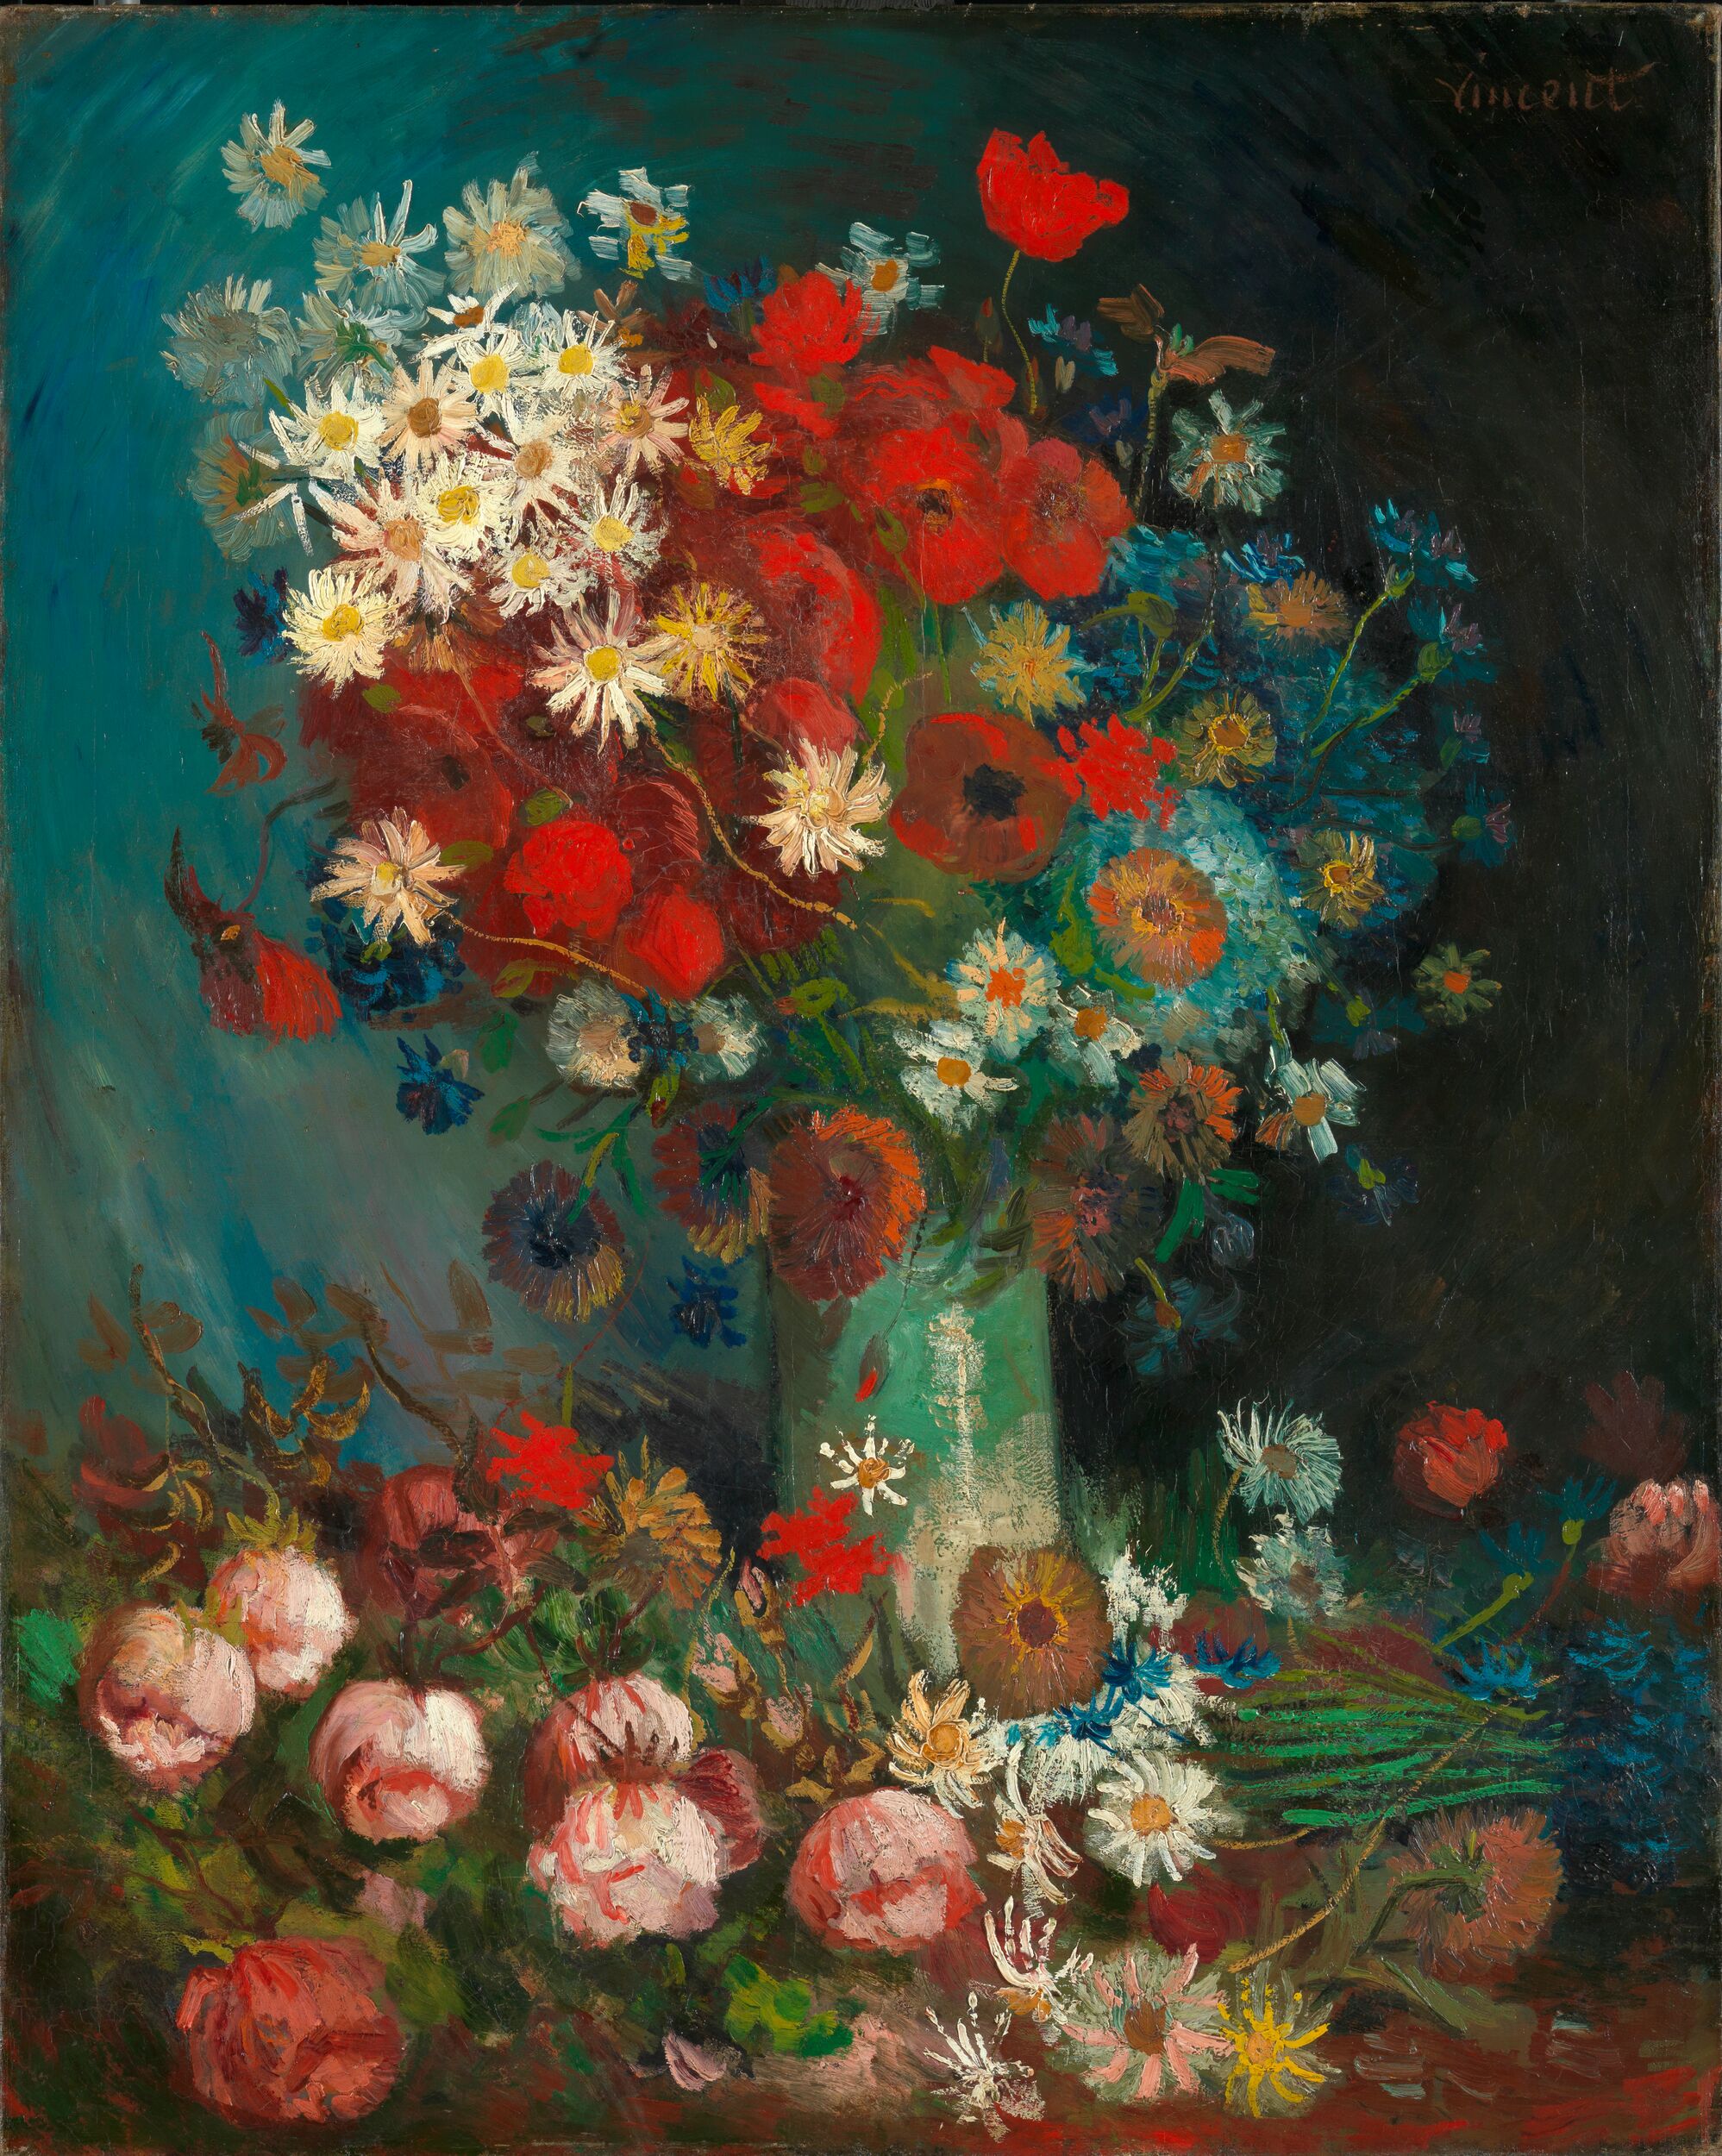 들꽃과 장미가 있는 정물 (Still life with Meadow Flowers and Roses) by 빈센트 반 고흐 - 1886–1887 - 100 x 70 cm 